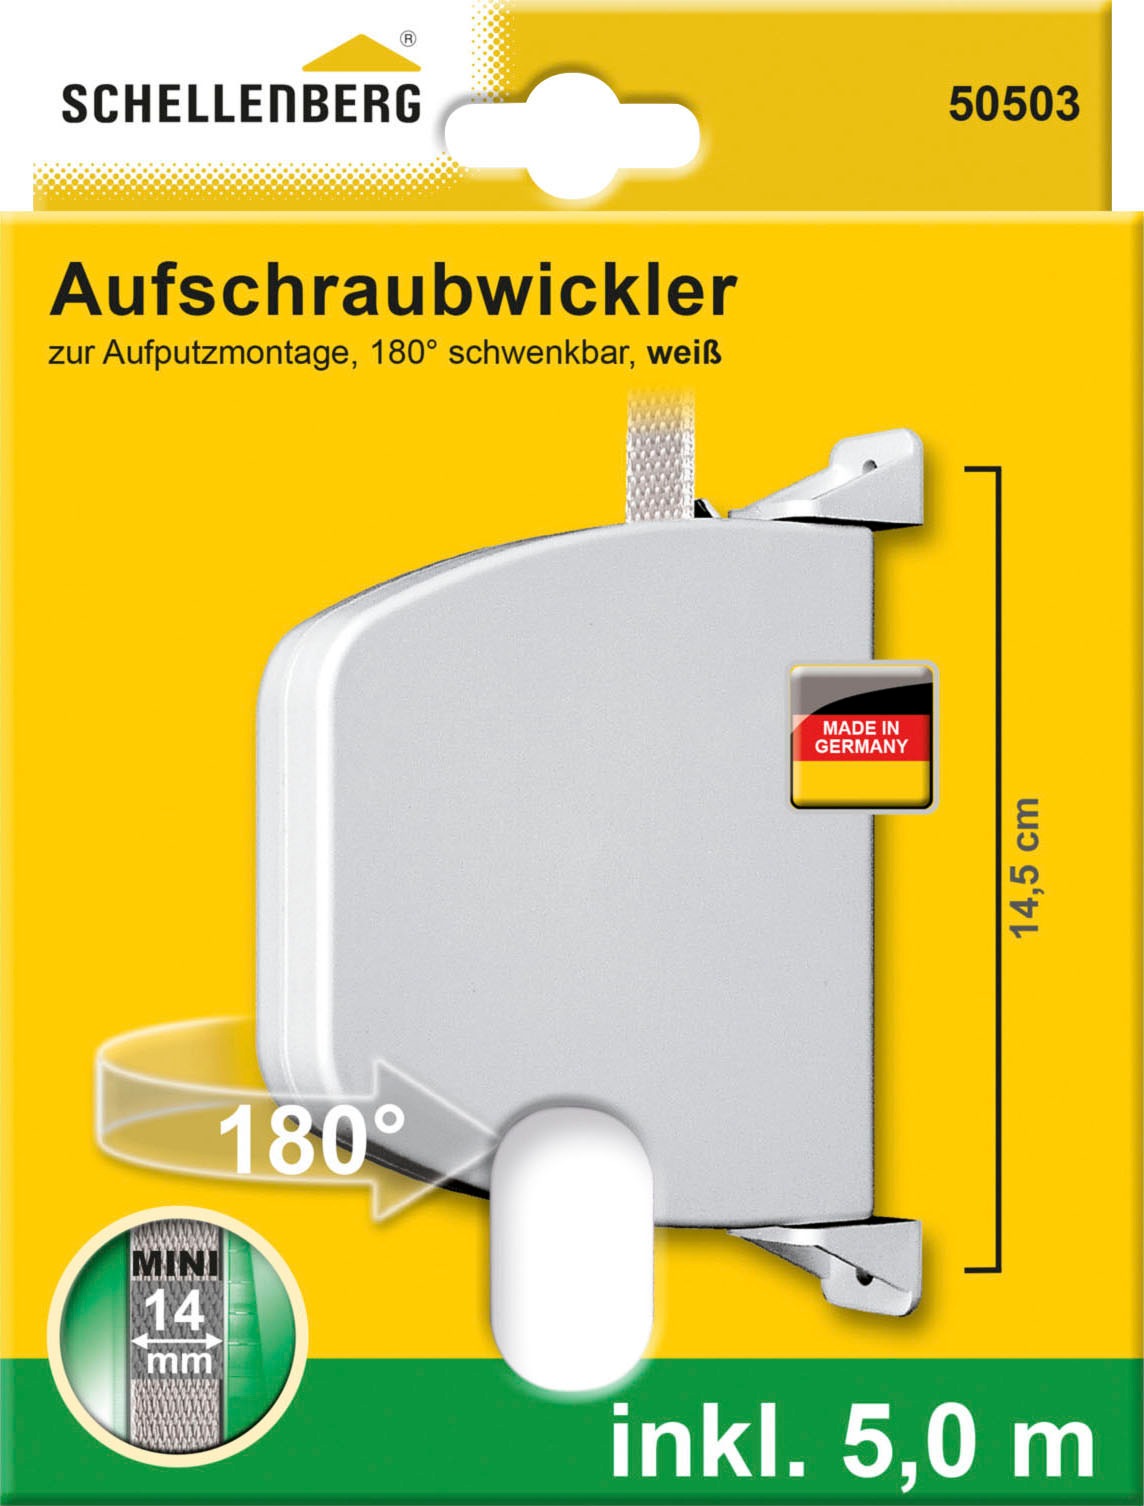 SCHELLENBERG Aufputz-Gurtwickler "Aufschraubwickler Mini", (1 tlg.), Aufschraubwickler mit 5mx14mm Rollladengurt, schwen